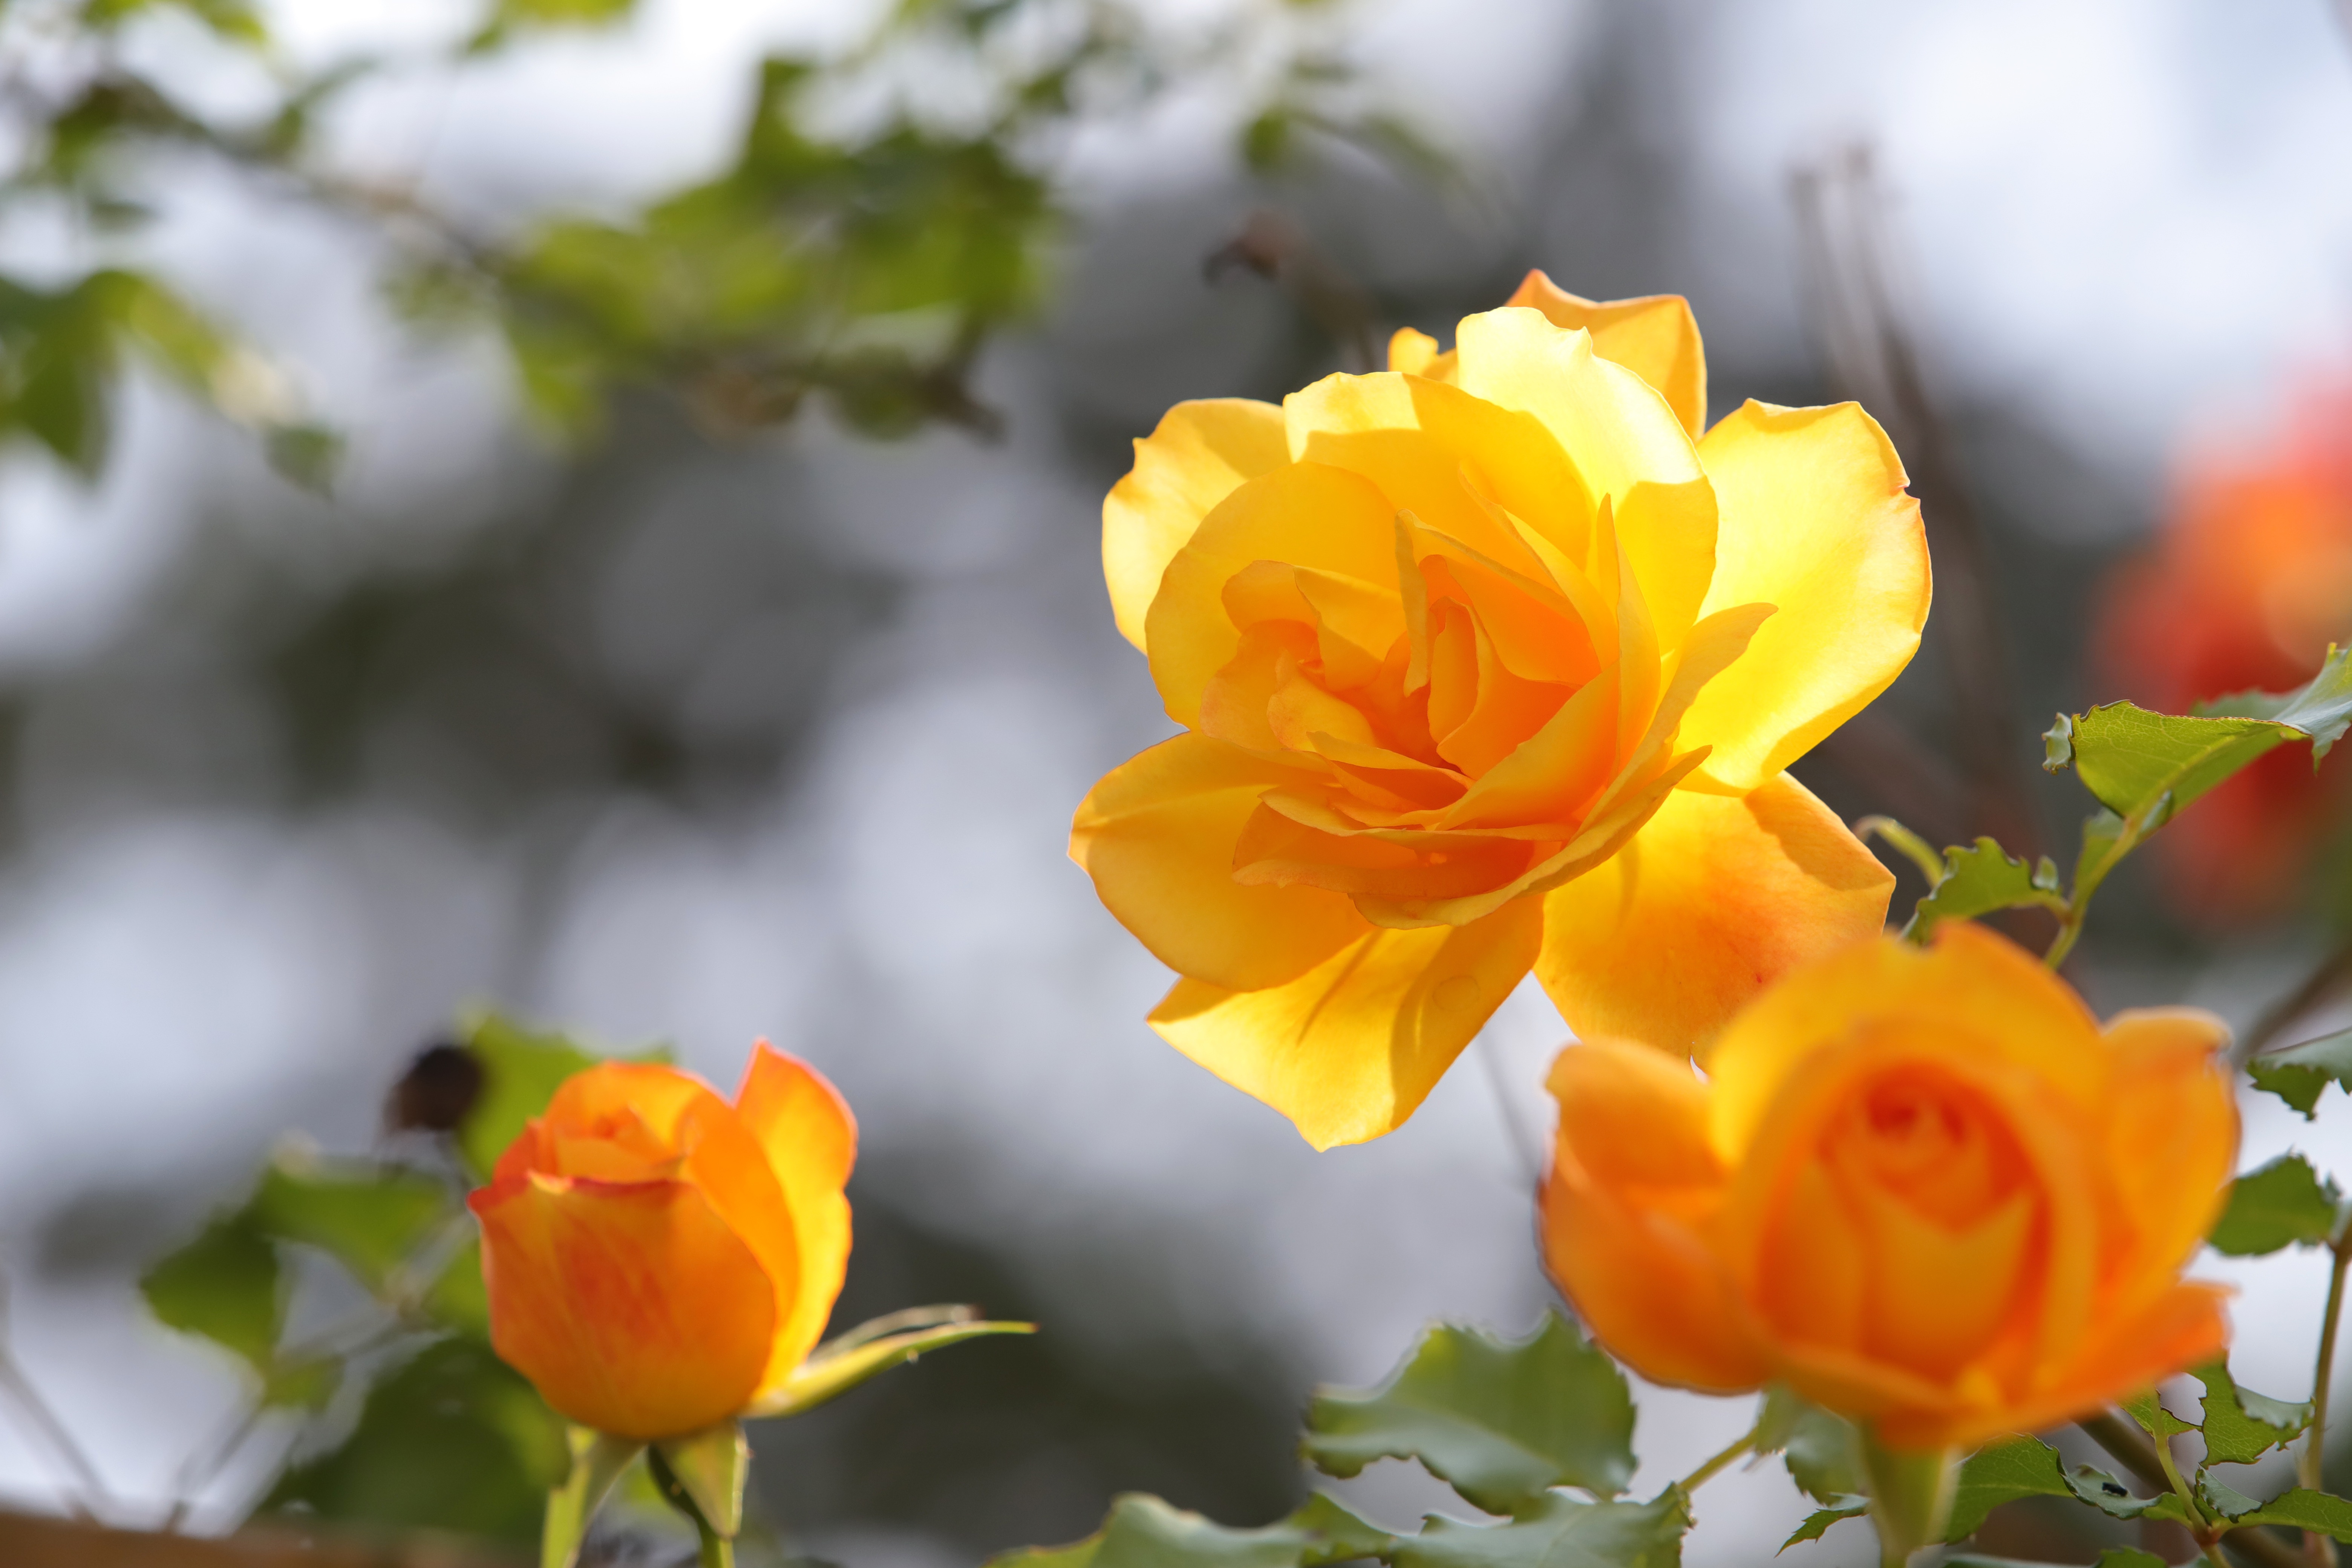 Скачать обои бесплатно Роза, Желтый Цветок, Земля/природа, Желтая Роза картинка на рабочий стол ПК